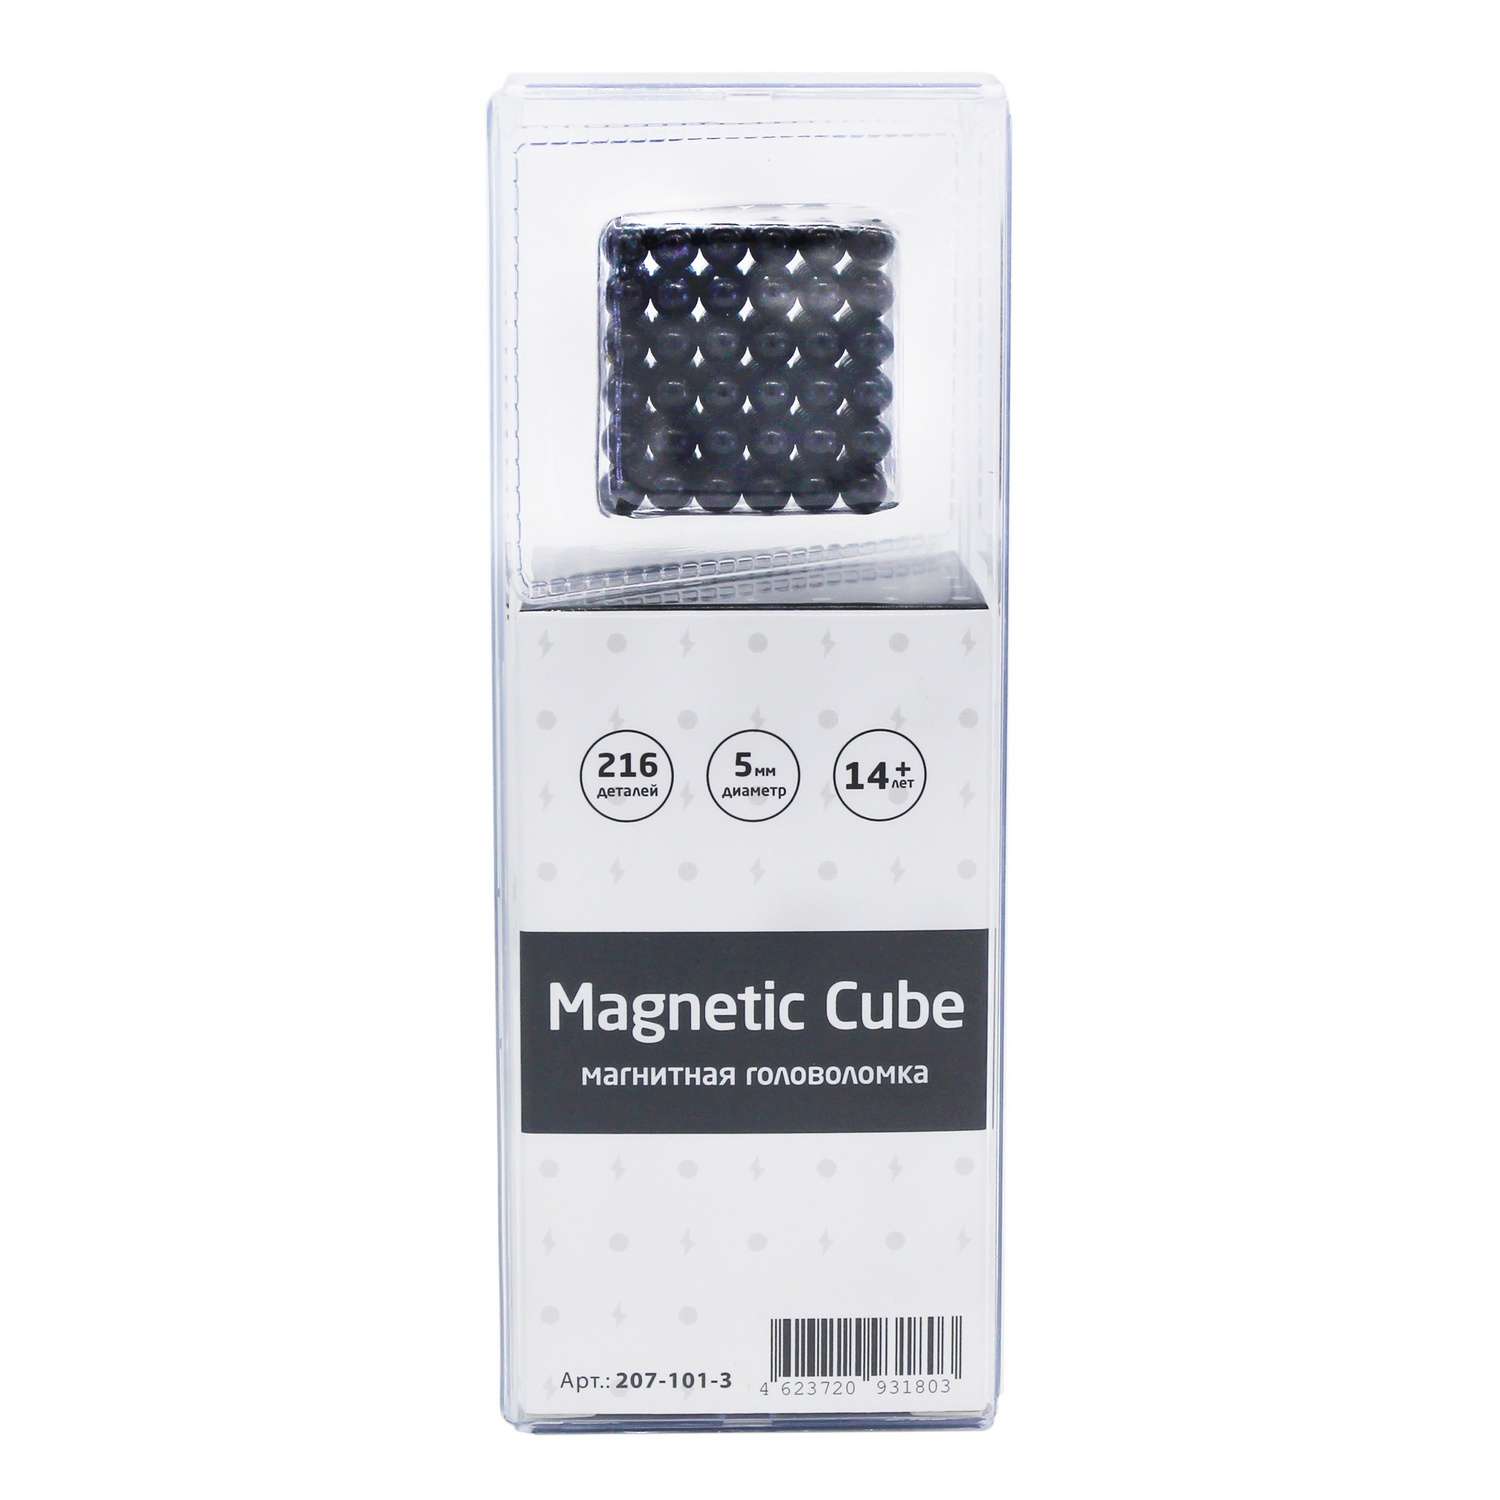 Головоломка магнитная Magnetic Cube черный неокуб 216 элементов - фото 3